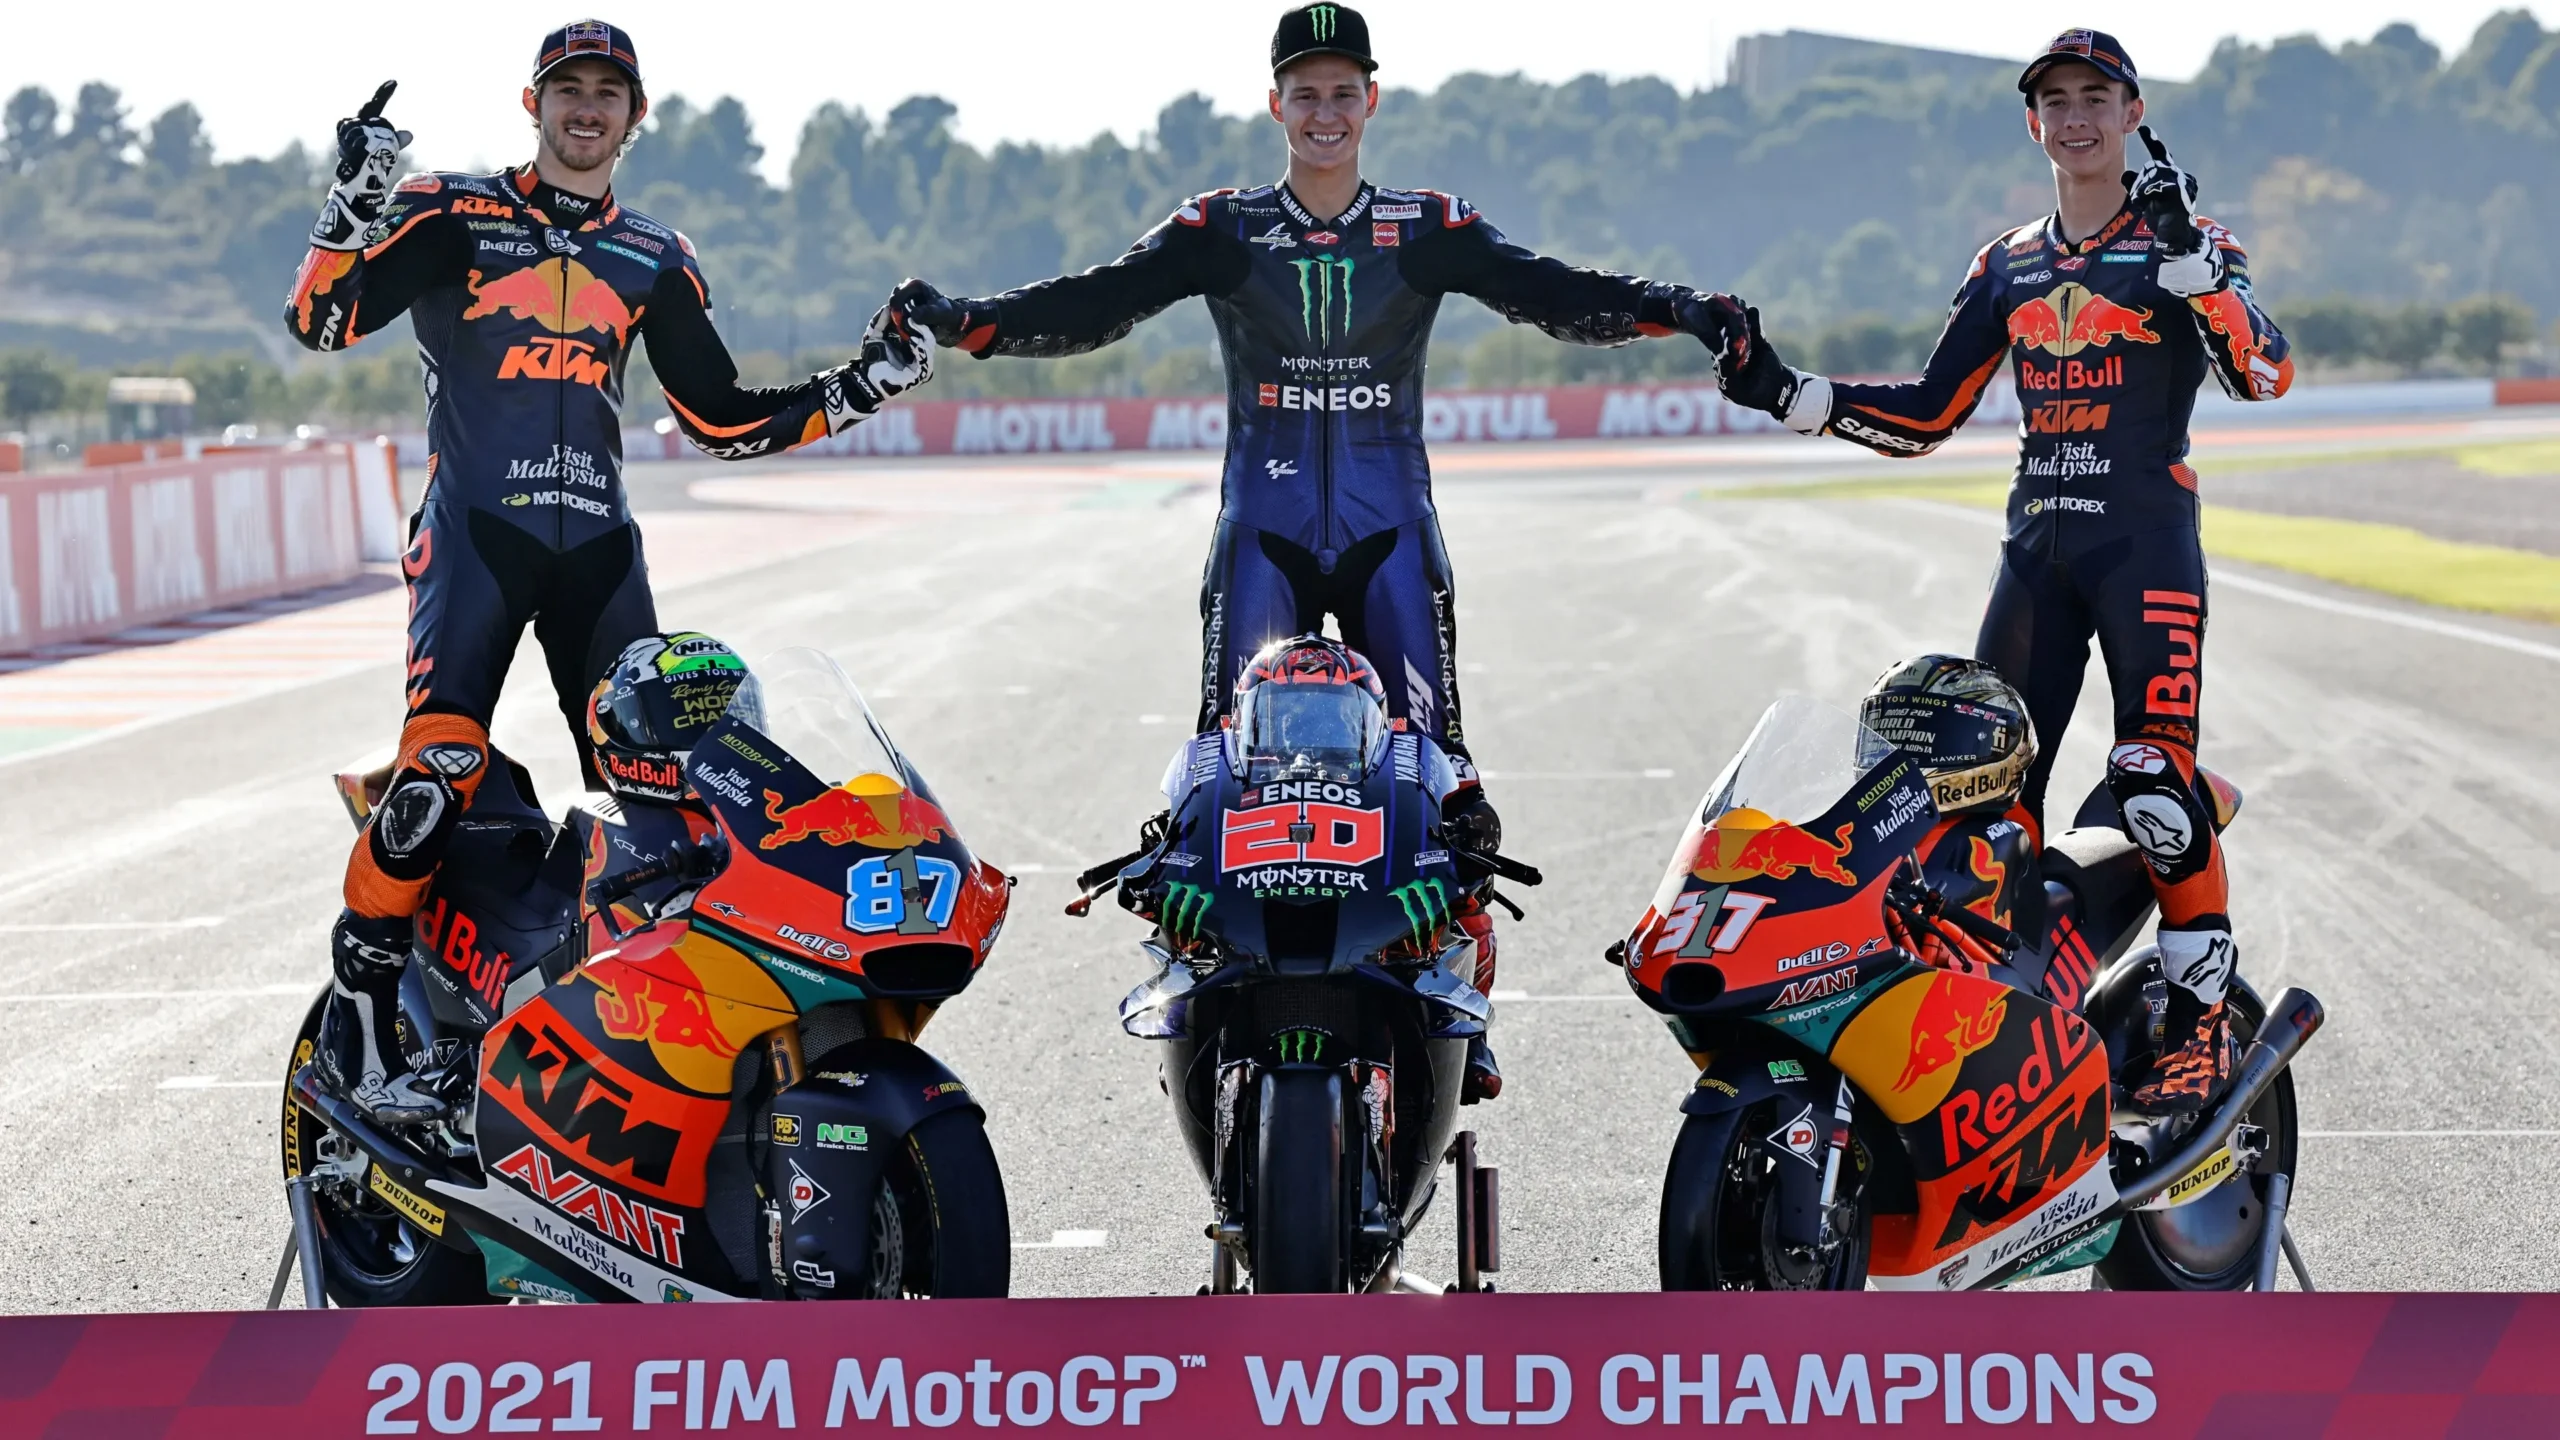 ganadores mundial moto gp - Qué país tiene más mundiales de motos